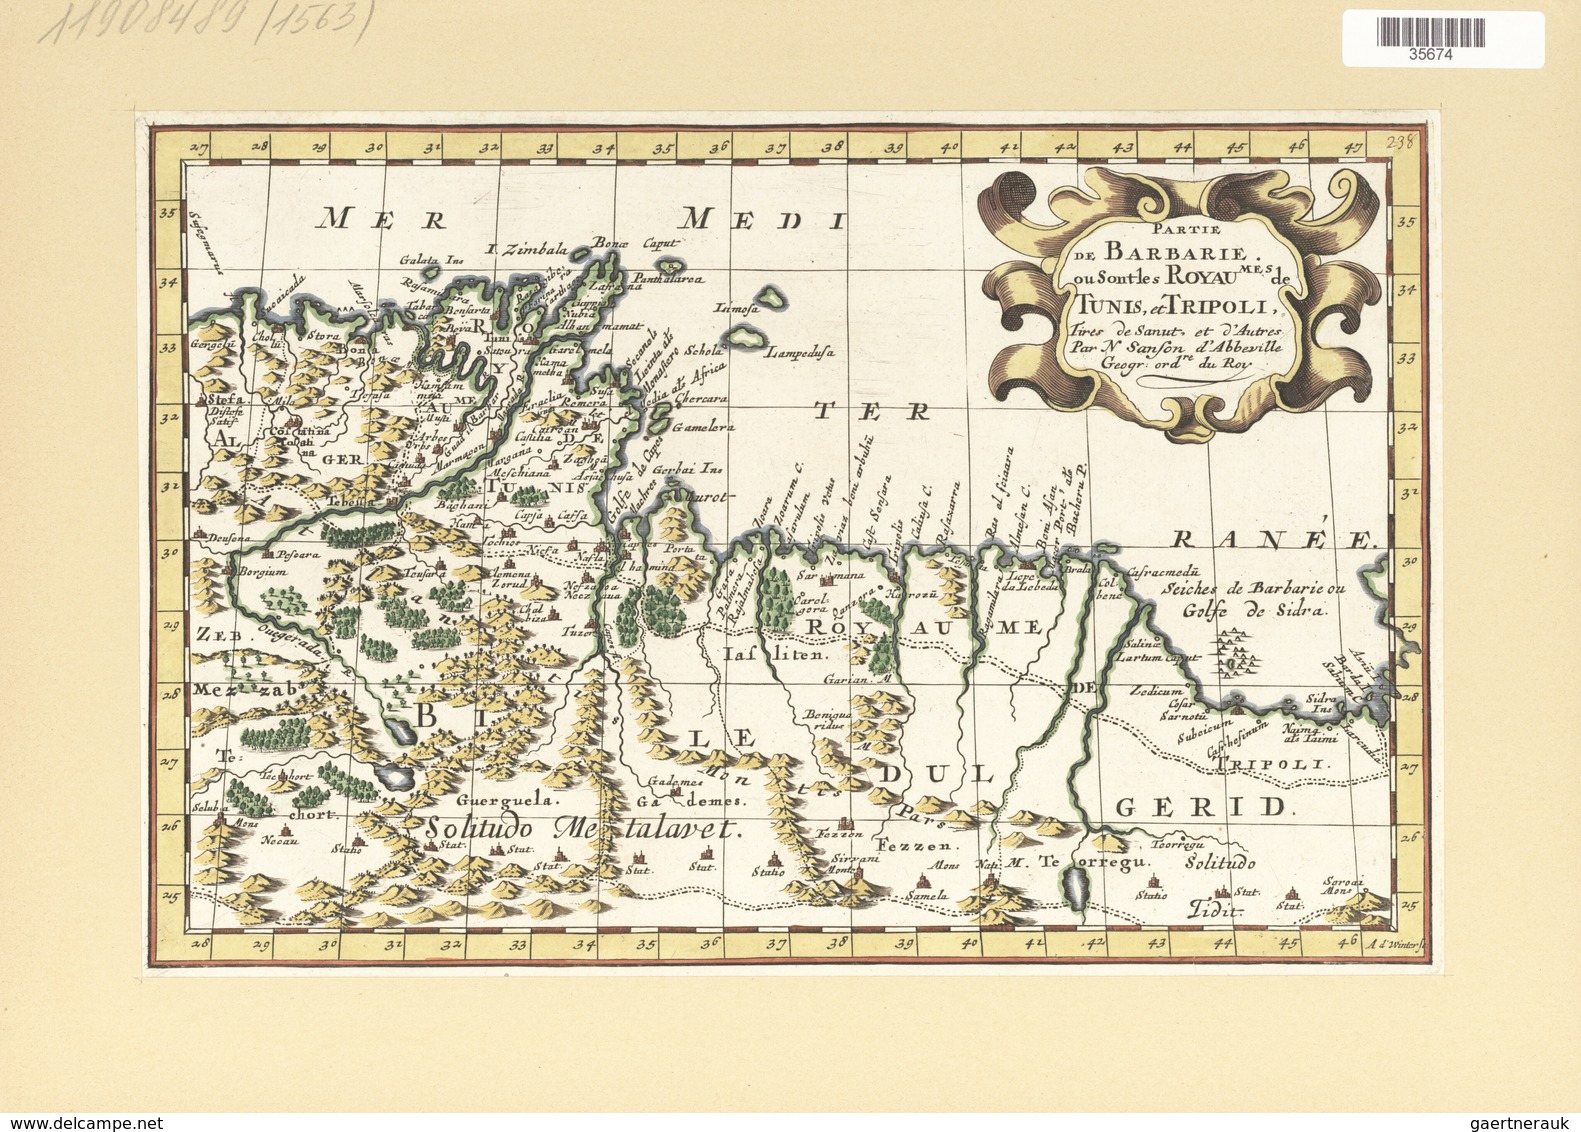 Landkarten Und Stiche: 1734. Partie De Barbarie, Ou Sont Les Royaumes De Tunis, Et Tripoli; By A.d W - Geography